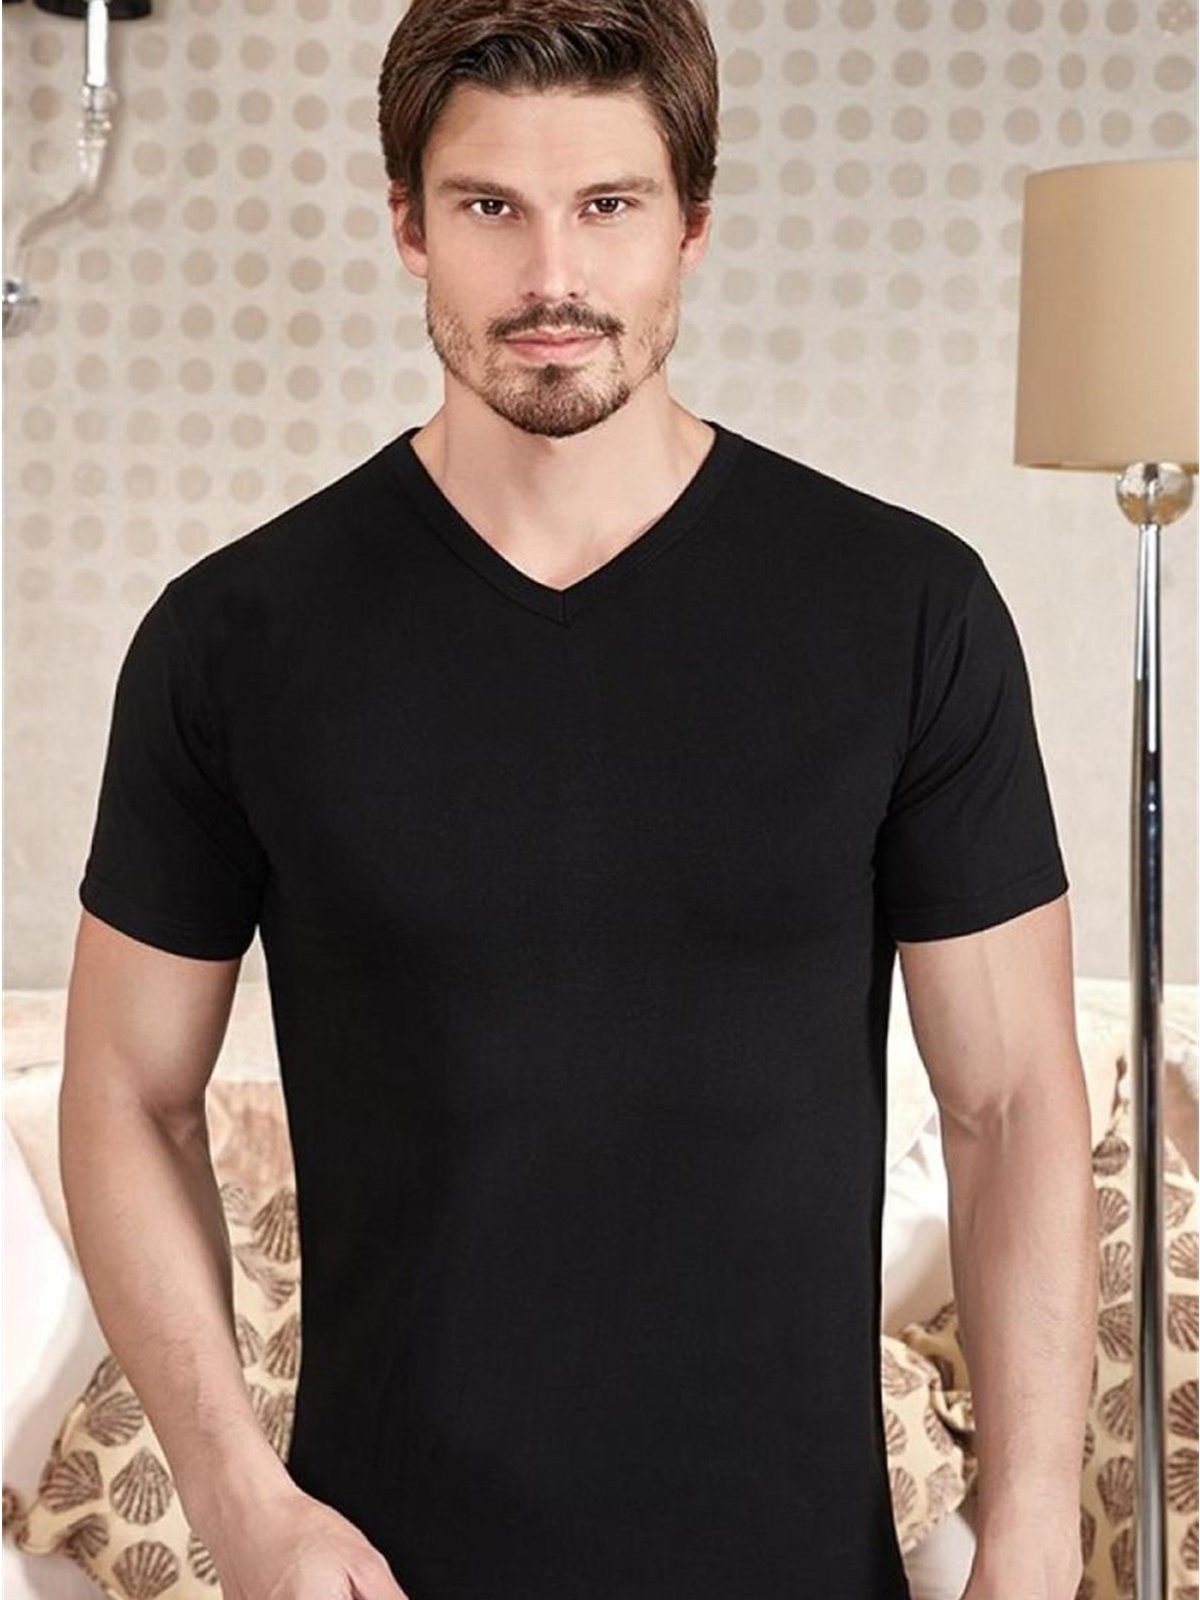 Berrak Collection Unterhemd Kurzarm V-Ausschnitt Herren Slimfit Jersey Business Shirt Schwarz, BS1027